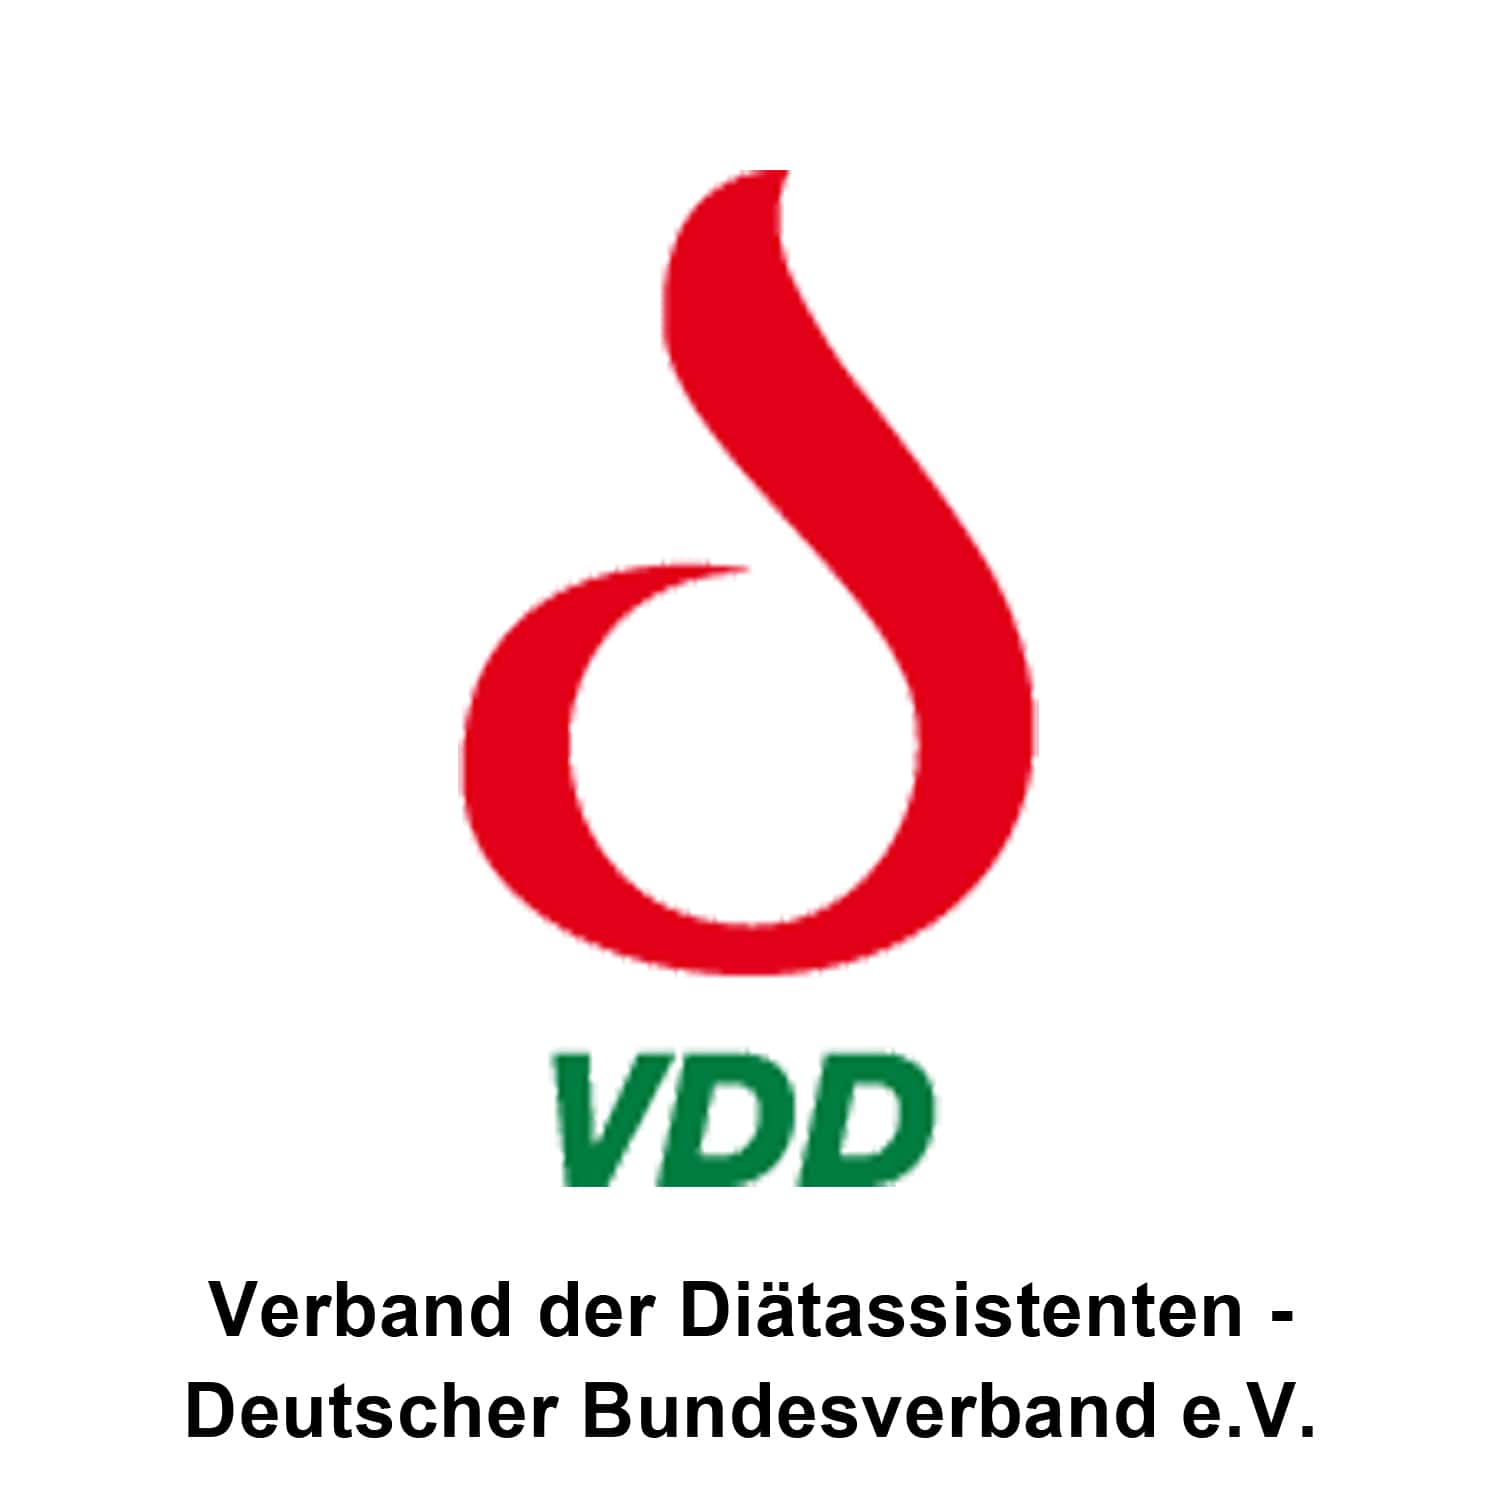 Verband der Diätassistenten - Deutscher Bundesverband e.V. - VDD